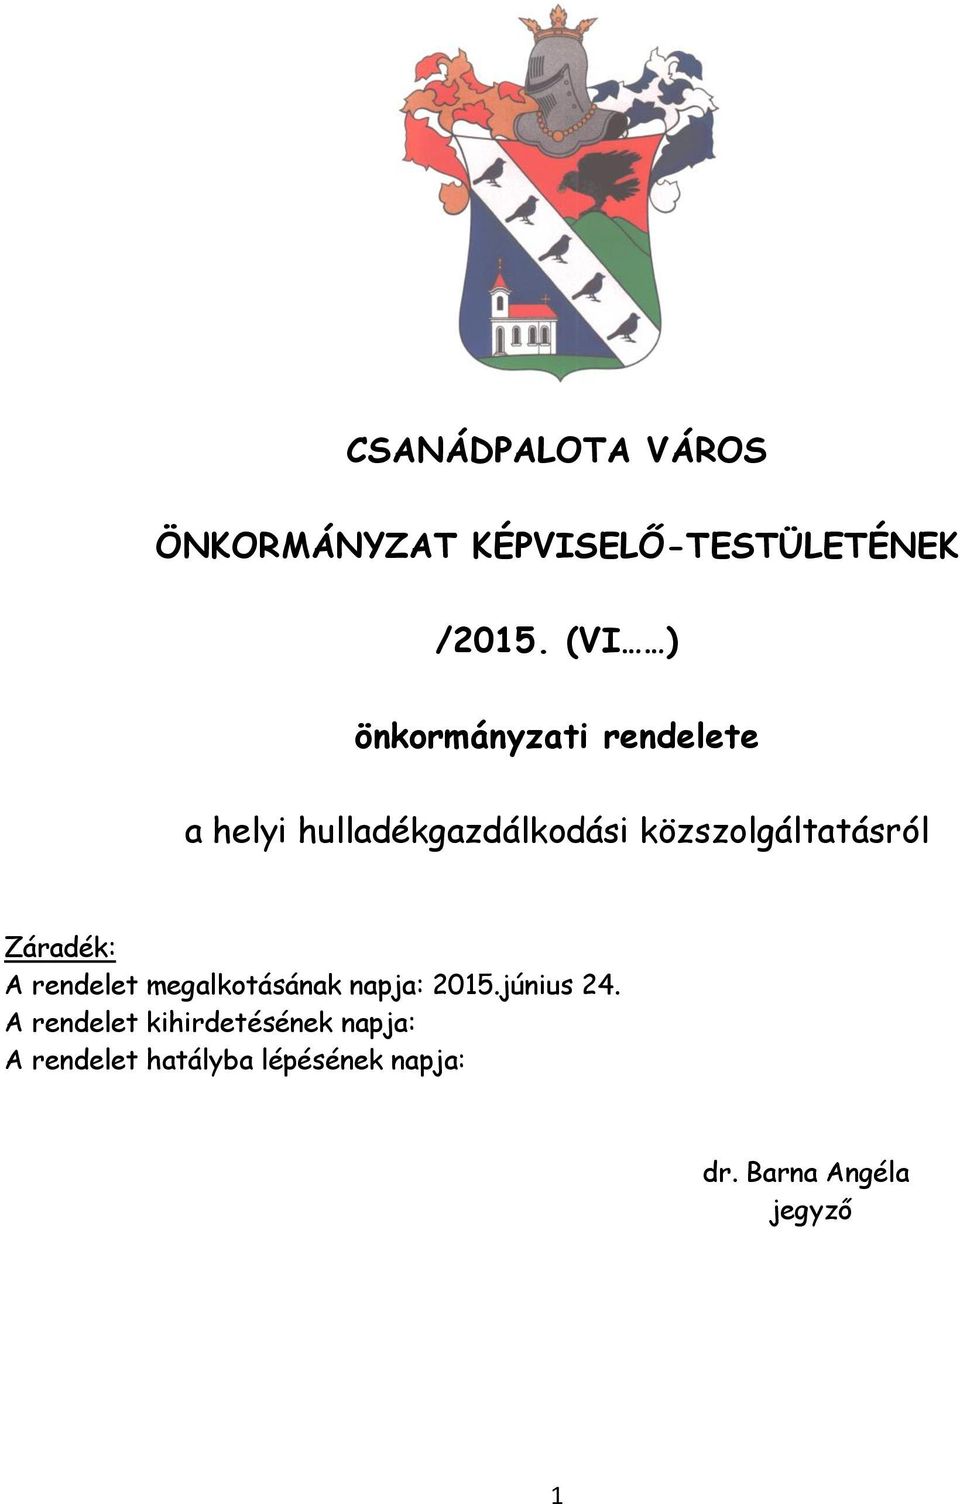 közszolgáltatásról Záradék: A rendelet megalkotásának napja: 2015.